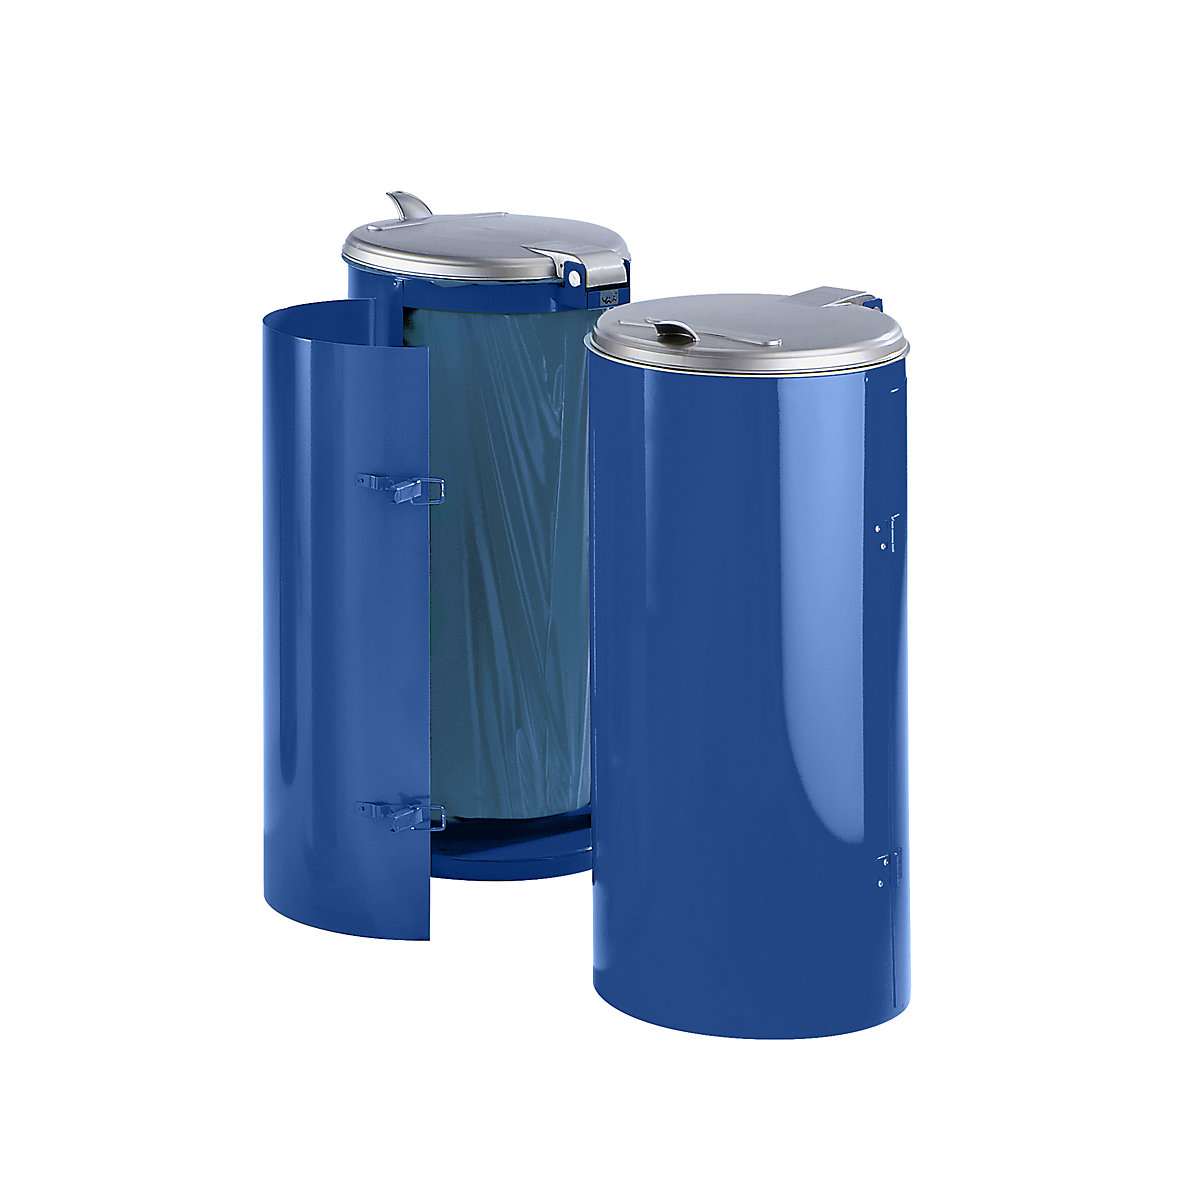 VAR Stahlblech-Abfallsammler, für Volumen 120 l, mit Einflügeltür, blau mit silberfarbenem Kunststoffdeckel